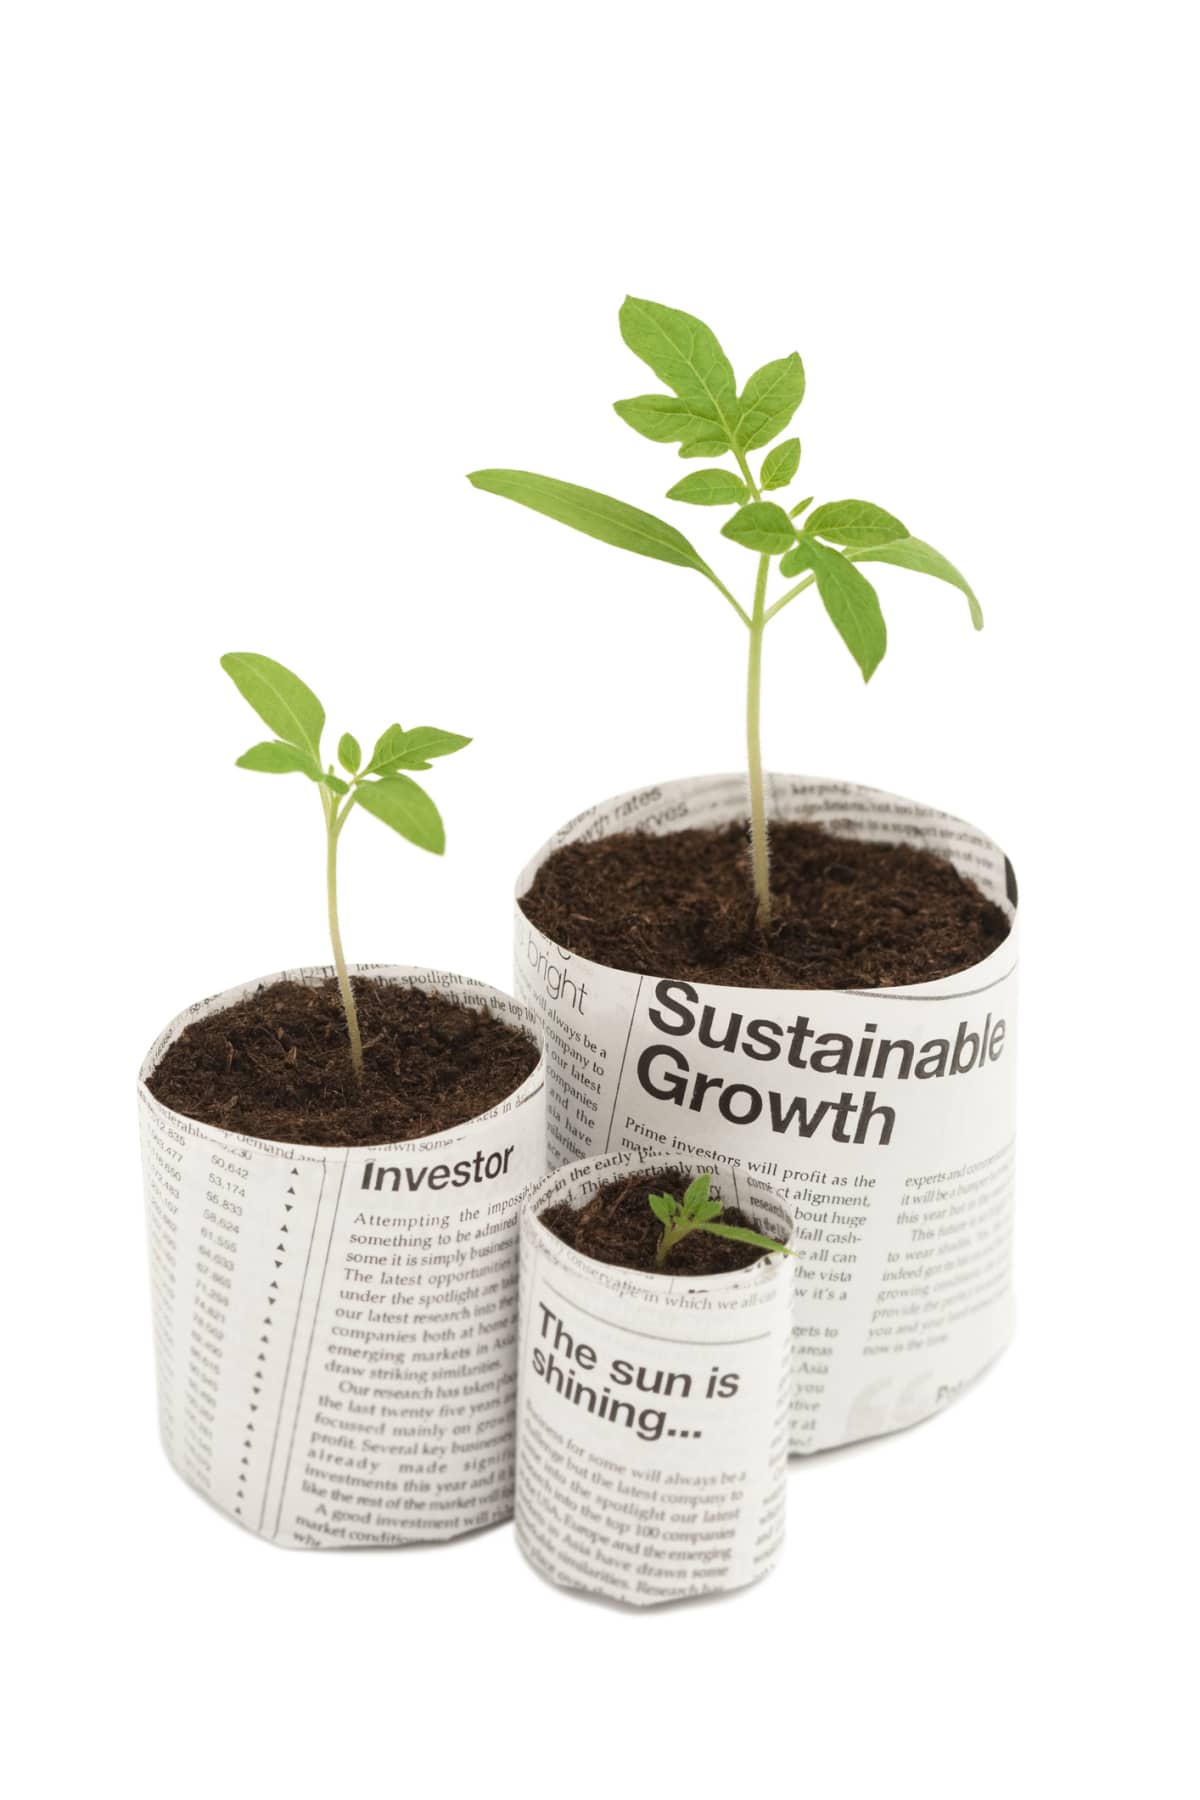 Three seedlings in newspaper pots